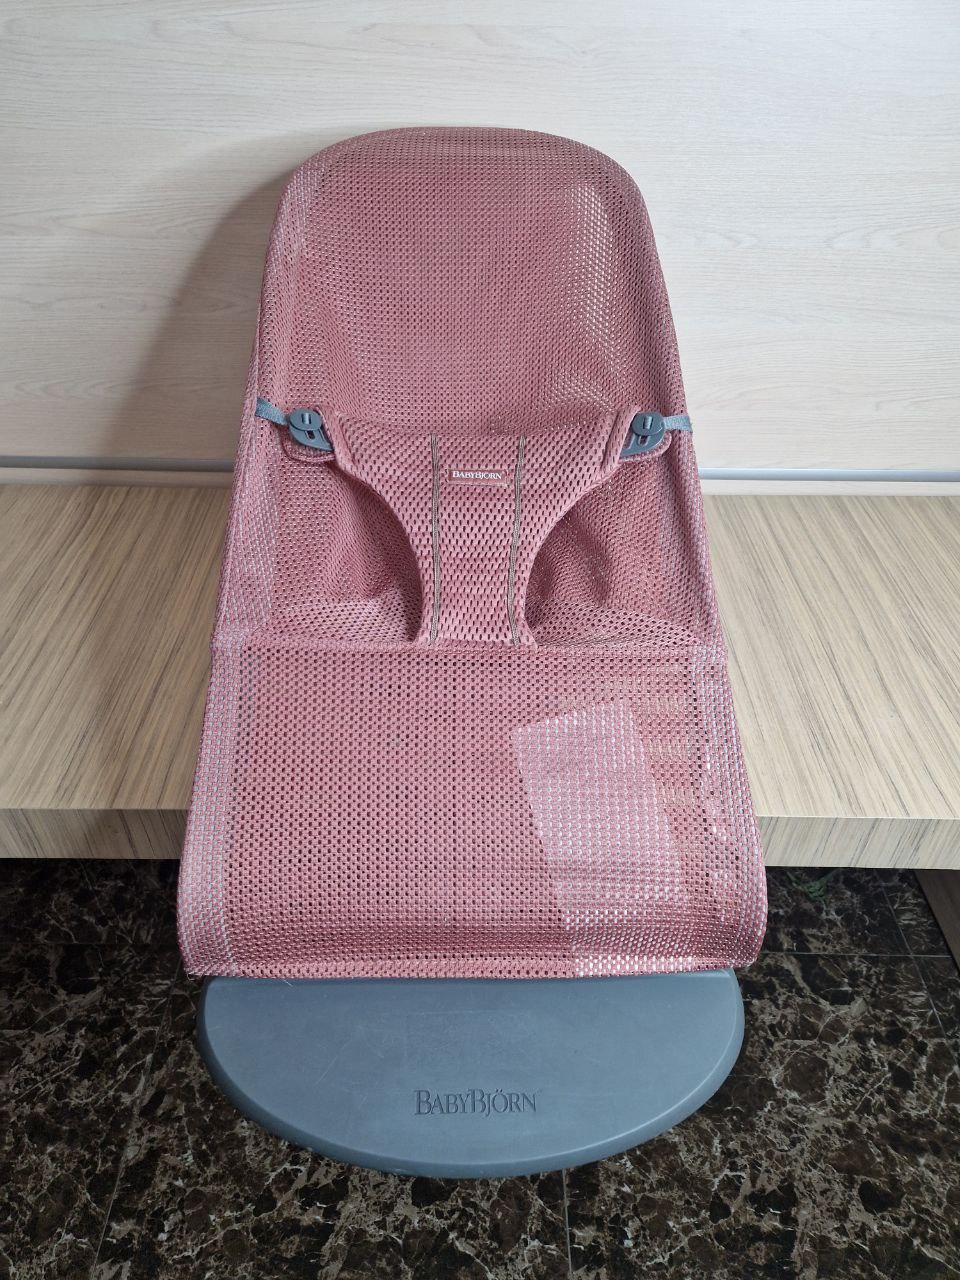 Продажа шезлонга BabyBjorn Mesh, цвет розовый, состояние: хорошее. Тест-драйв и доставка по России.